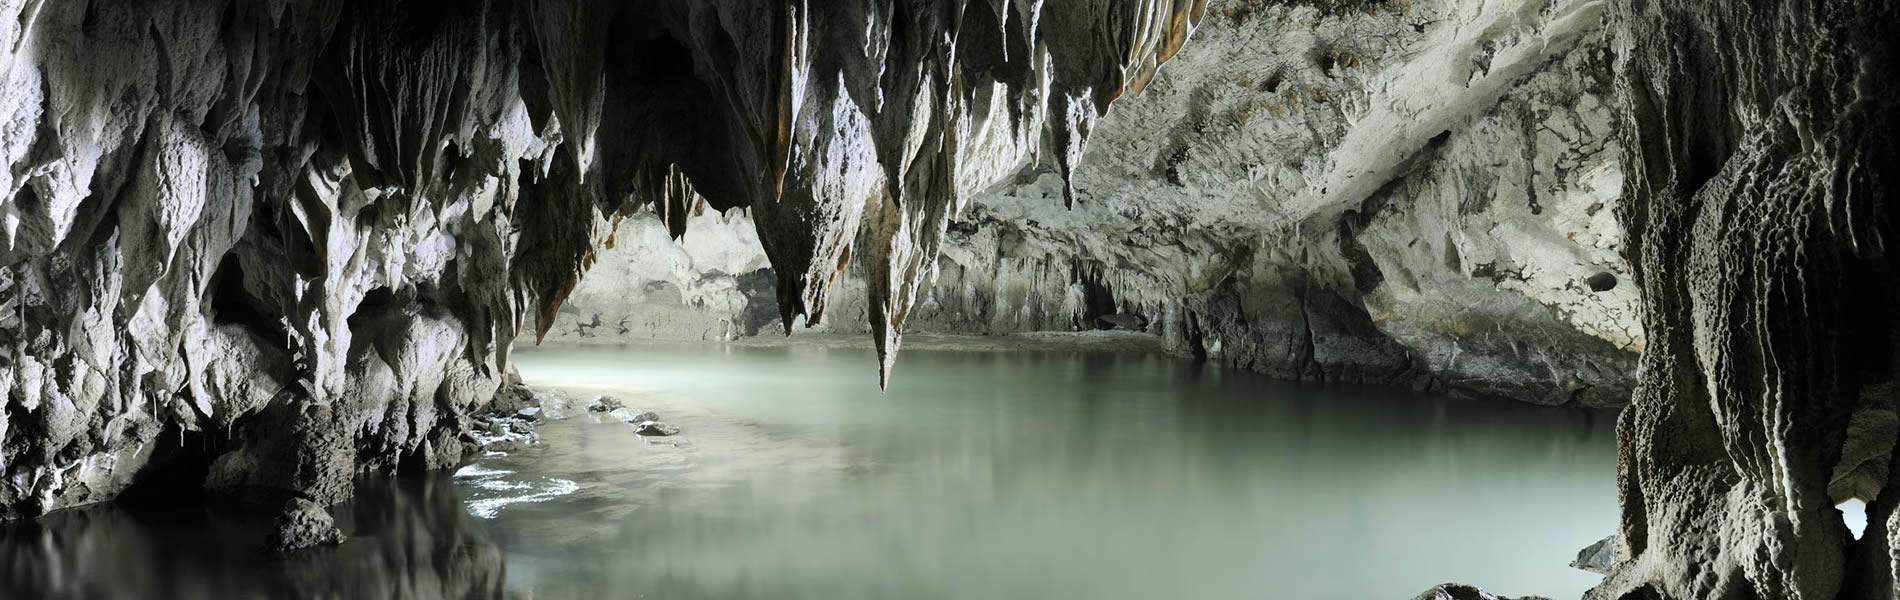 Grotte di Pertosa-San Pietro al Tanagro